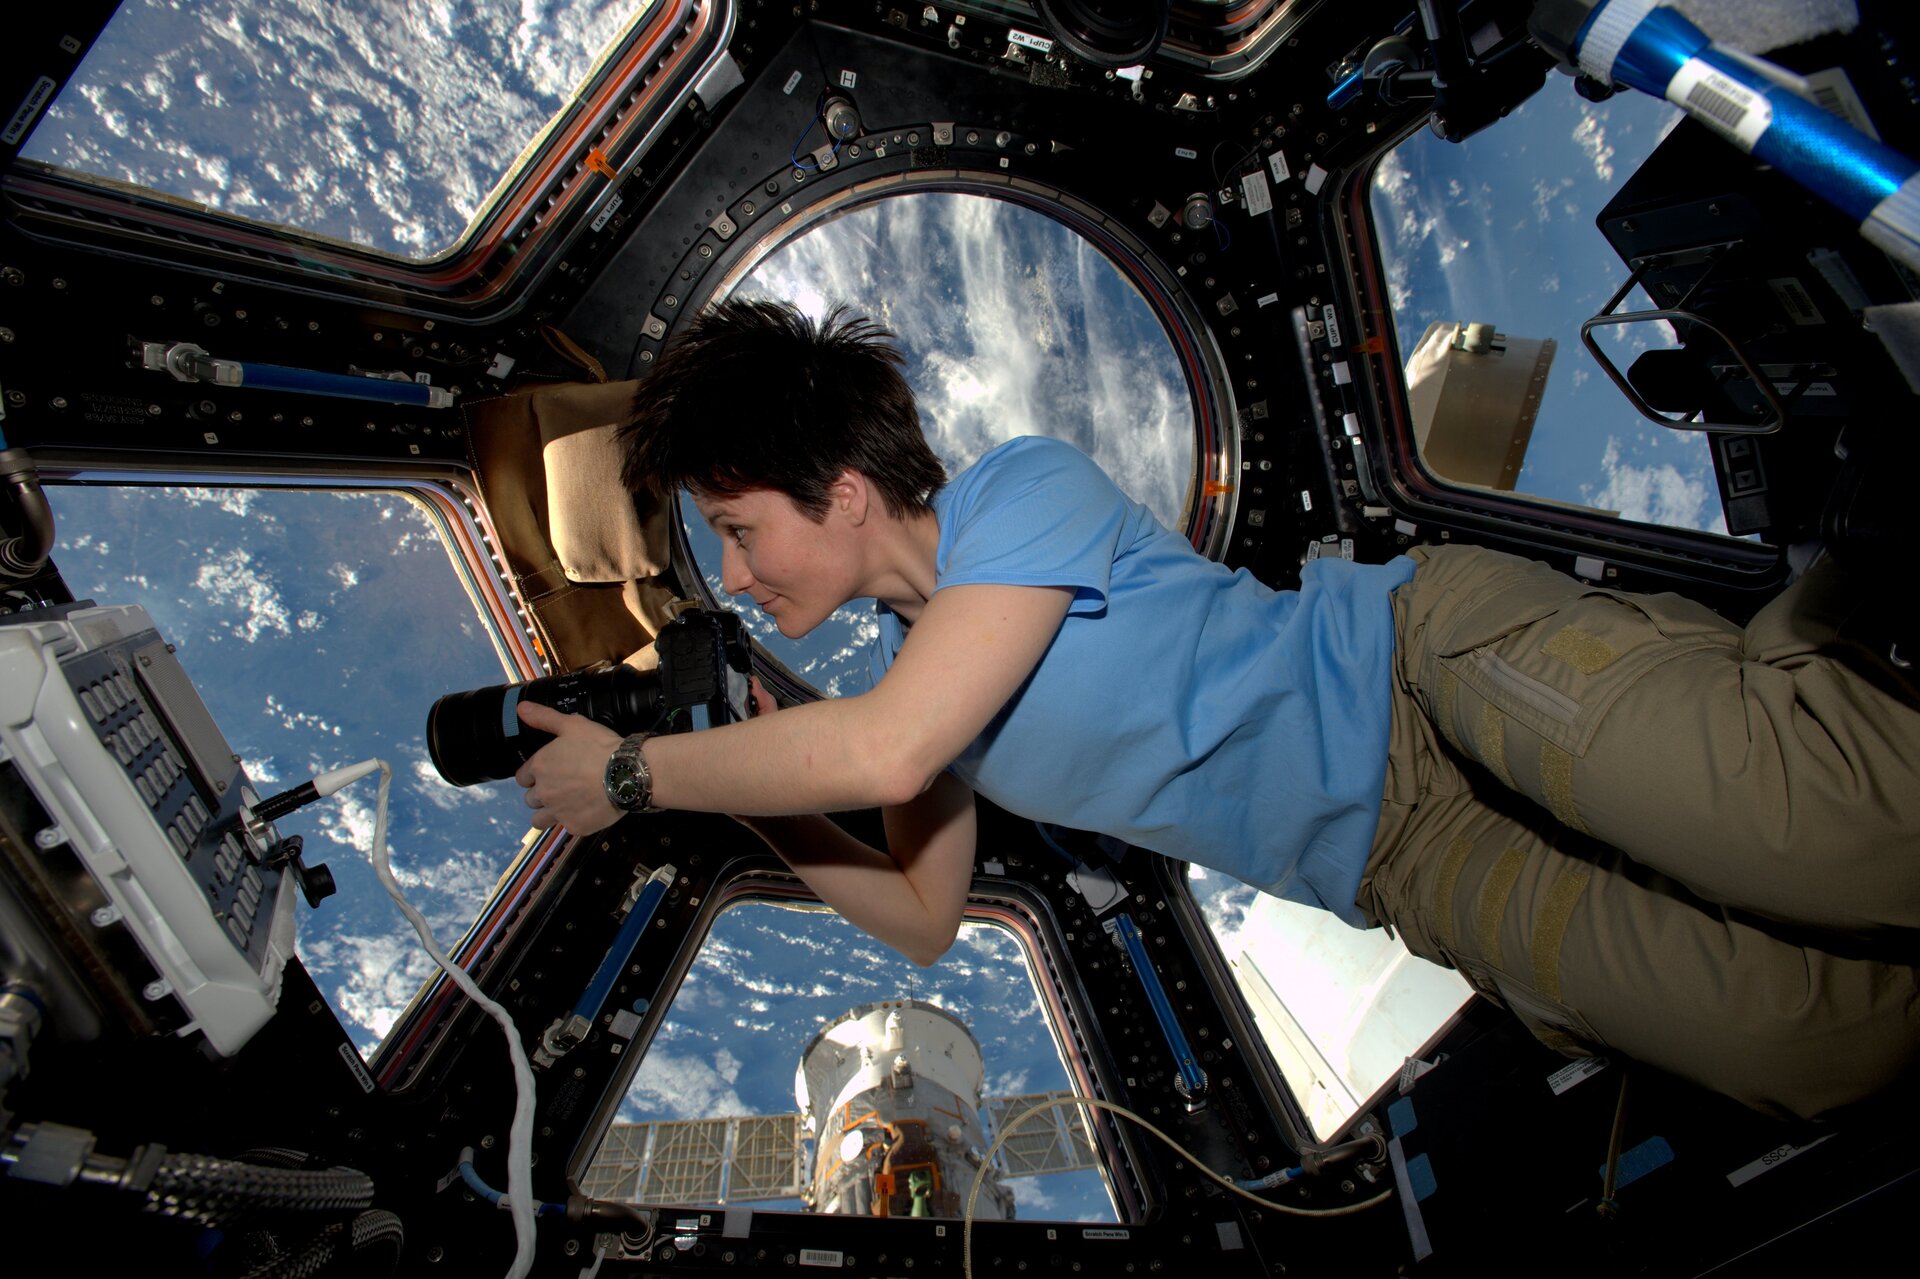 Die Astronautin Samantha Cristoforetti schwerelos auf der ISS mit einer Kamera in ihren Händen. Ausserhalb des Fensters kann man die Erdoberfläche sehen.